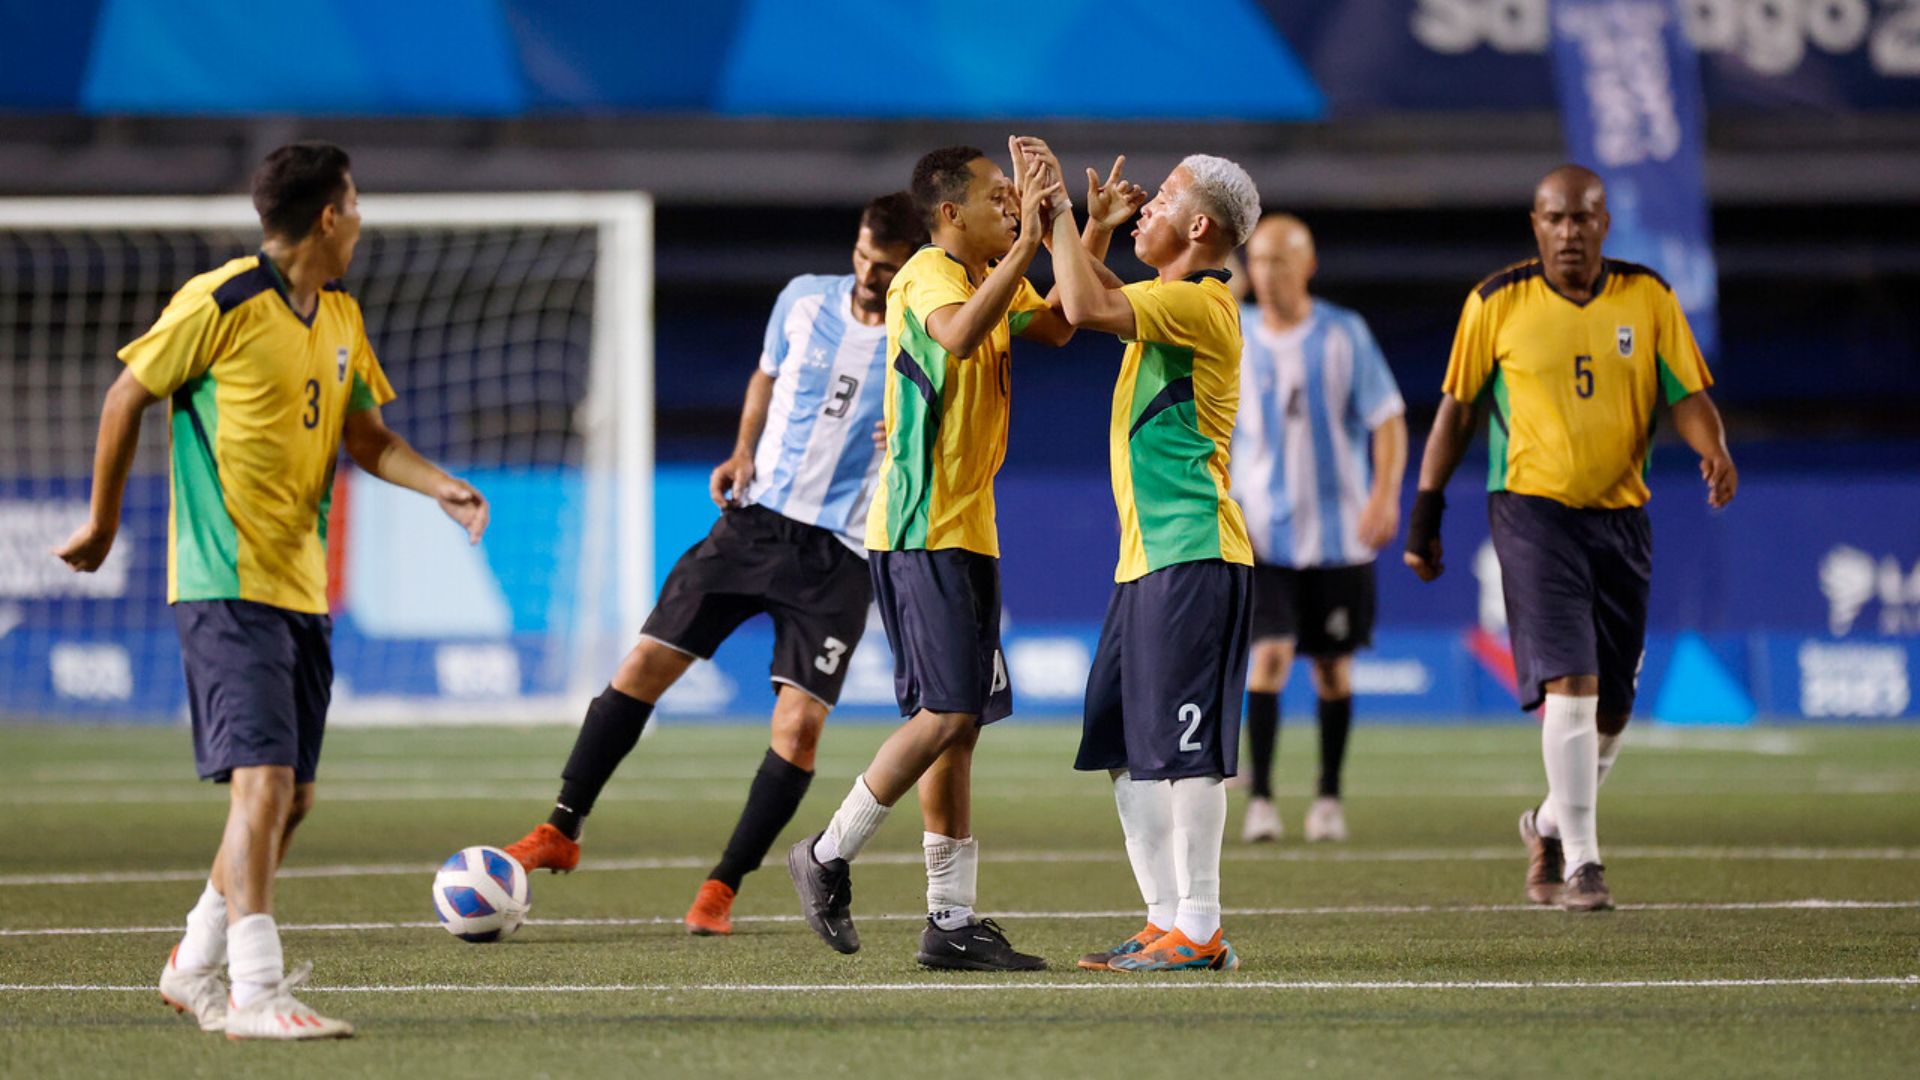 Brasil le gana el clásico a Argentina y obtiene el oro en el Fútbol PC